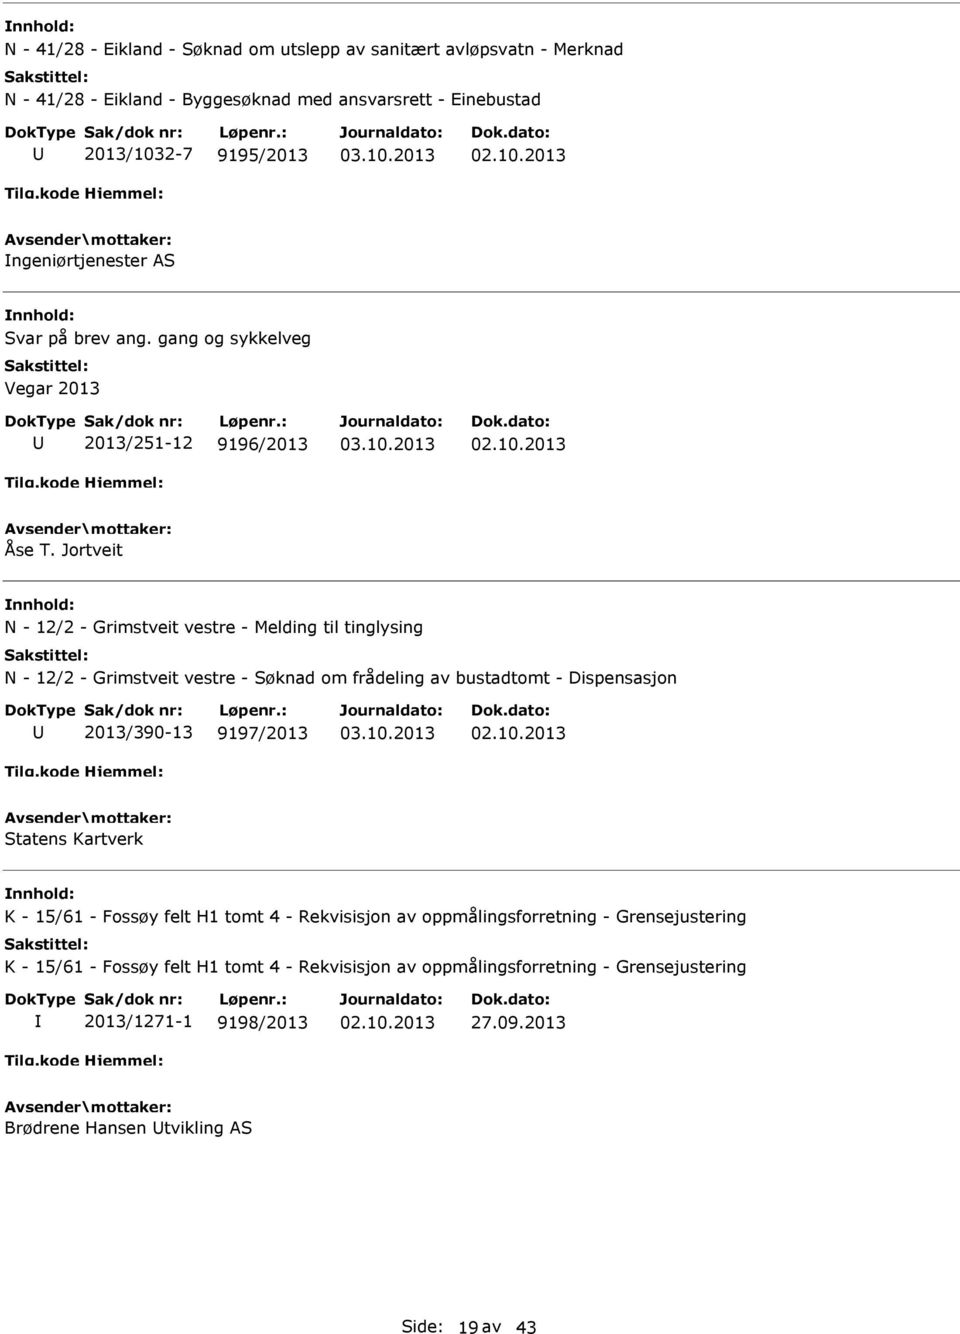 Jortveit N - 12/2 - Grimstveit vestre - Melding til tinglysing N - 12/2 - Grimstveit vestre - Søknad om frådeling av bustadtomt - Dispensasjon 2013/390-13 9197/2013